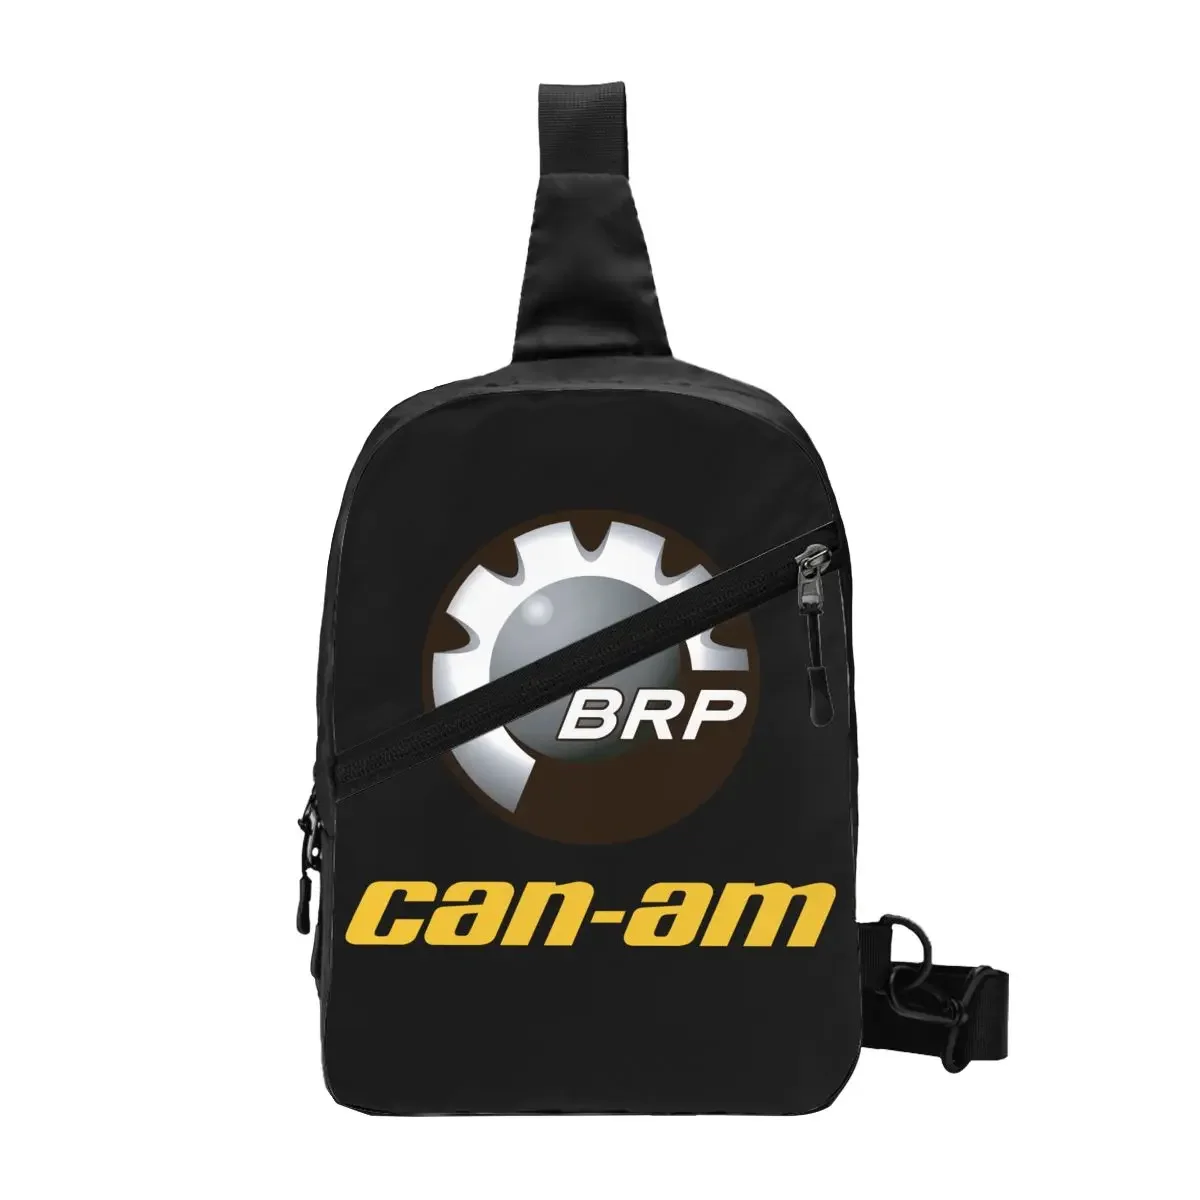 

Рюкзак BRP ATV Can Am с логотипом, мужской рюкзак-слинг через плечо, нагрудная сумка на плечо для путешествий, пешего туризма, рюкзак